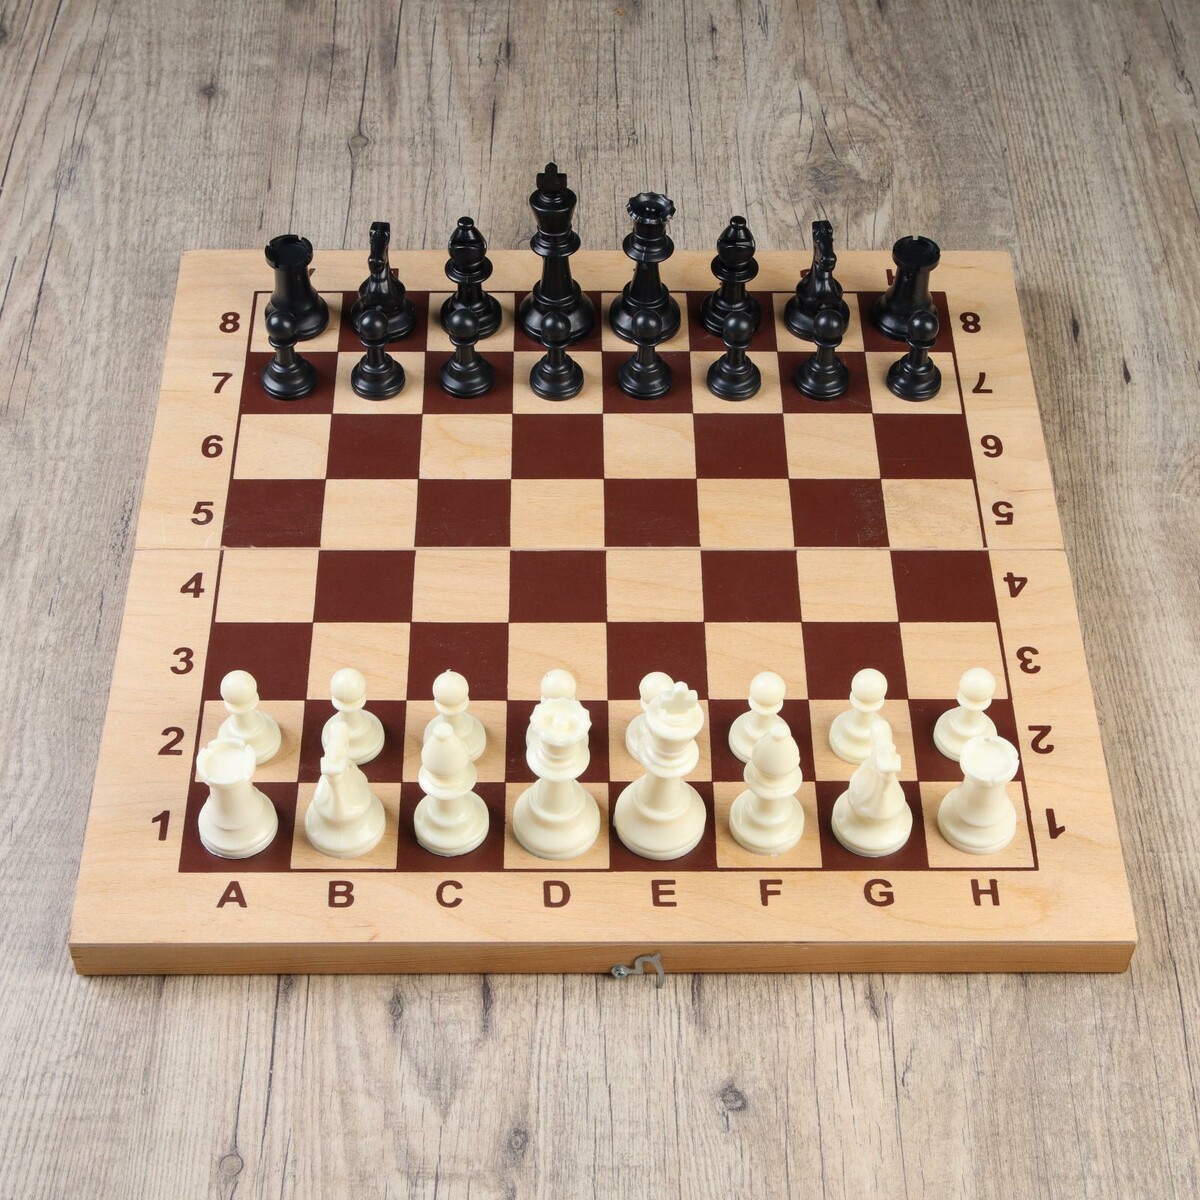 Шахматные фигуры, пластик, король h-9.5 см, пешка h-4.5 см шахматные фигуры айвенго в картонной упаковке